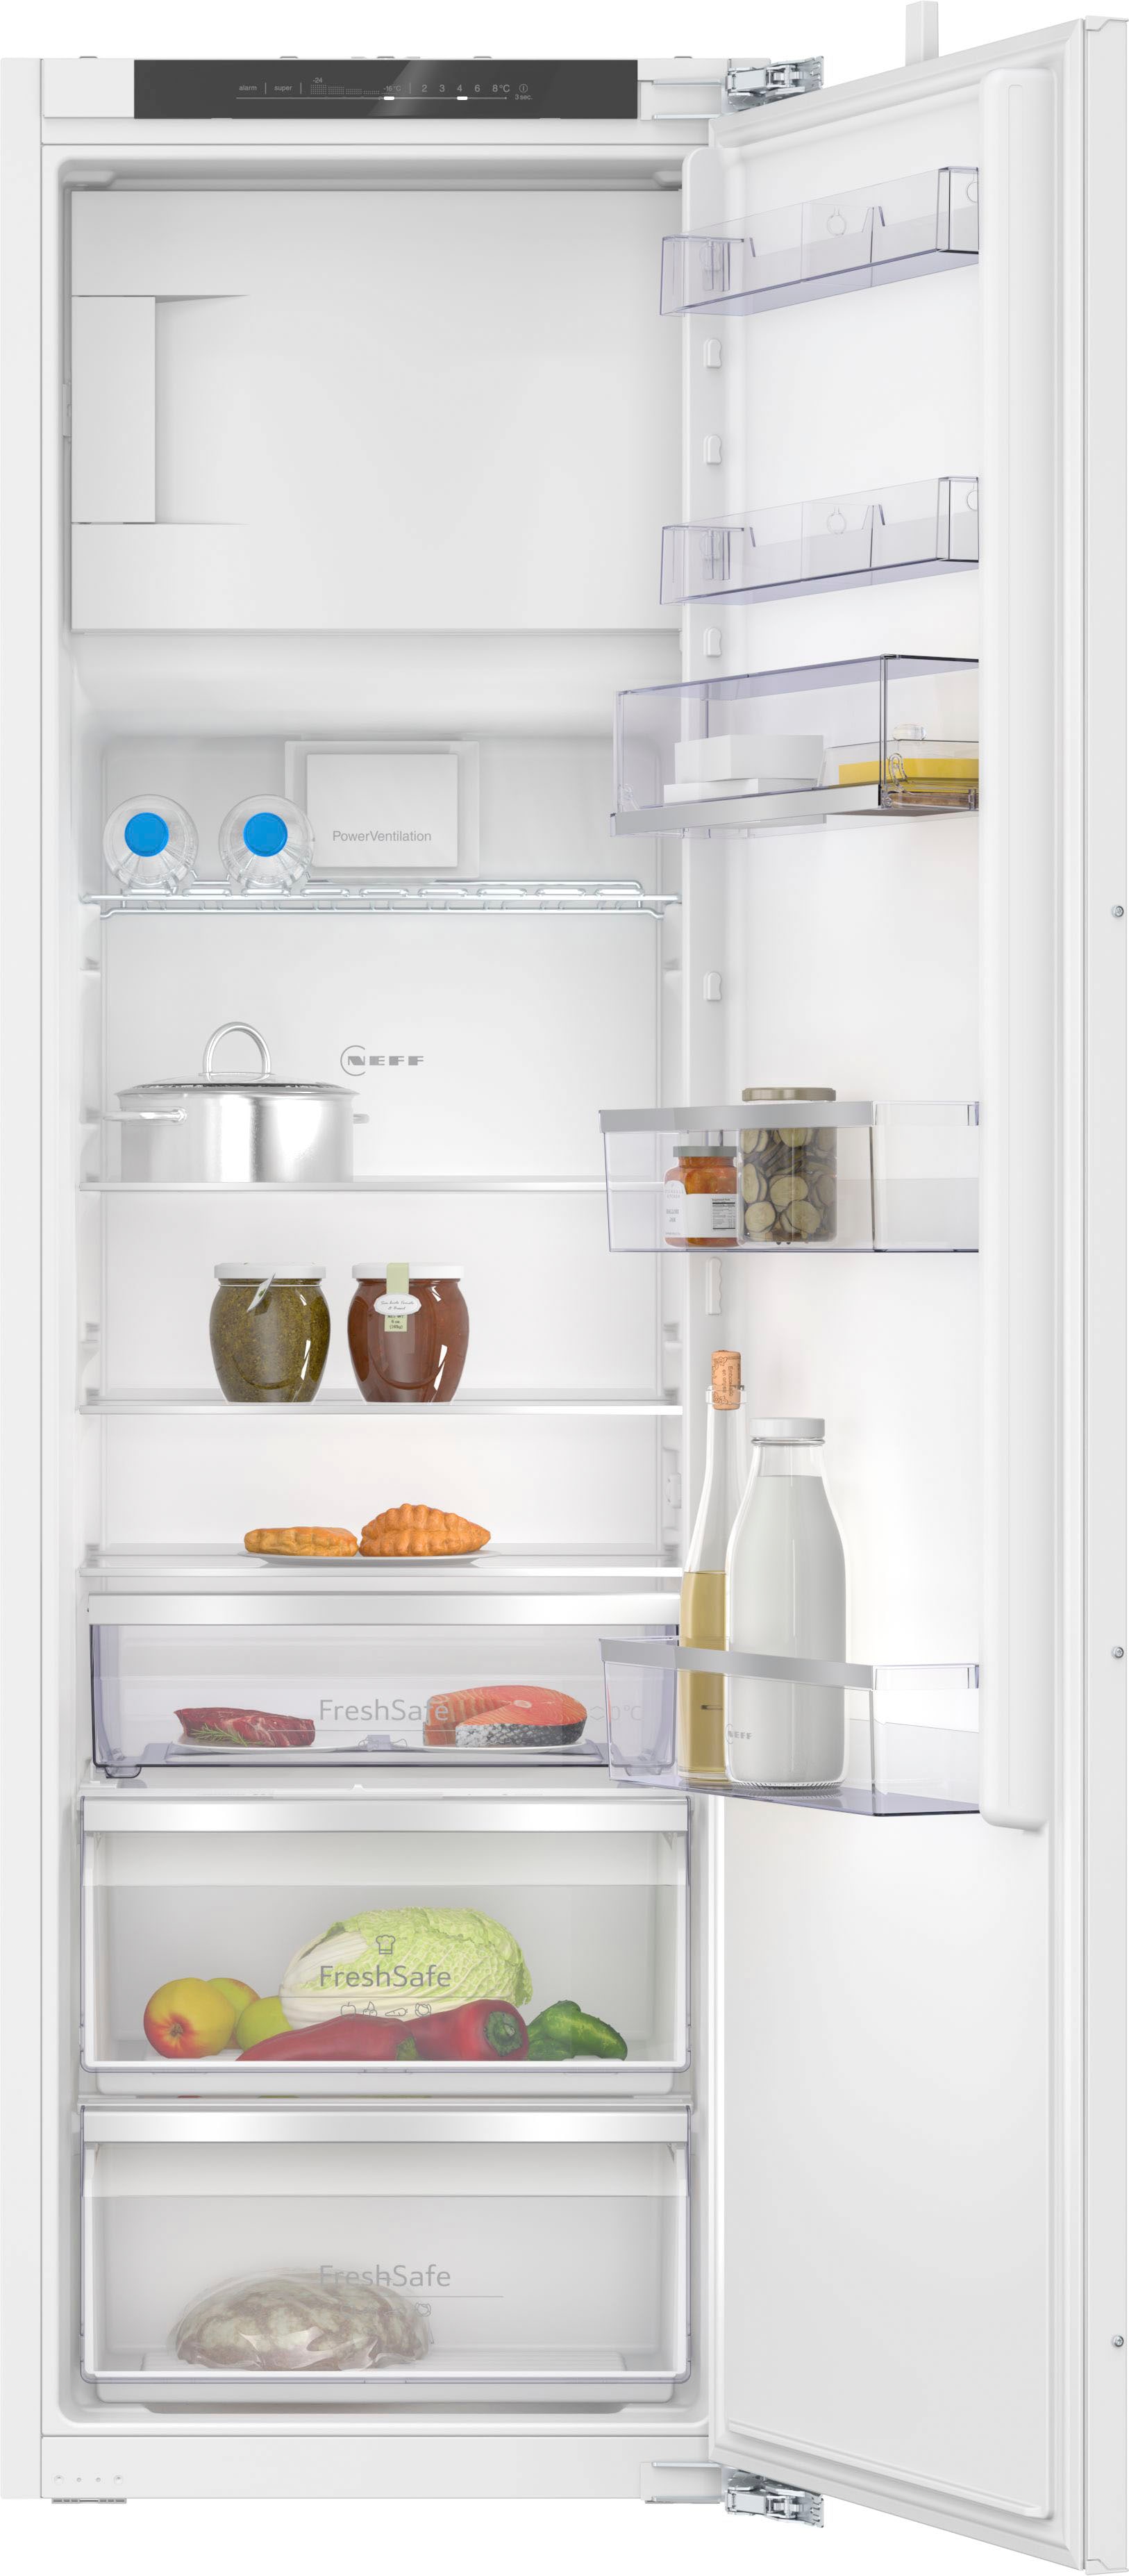 NEFF Einbaukühlschrank 'KI2823DD0', KI2823DD0, 177,2 cm hoch, 55,8 cm breit, Fresh Safe 1 : Schublade für ideale Lagerung von Fisch & Fleisch